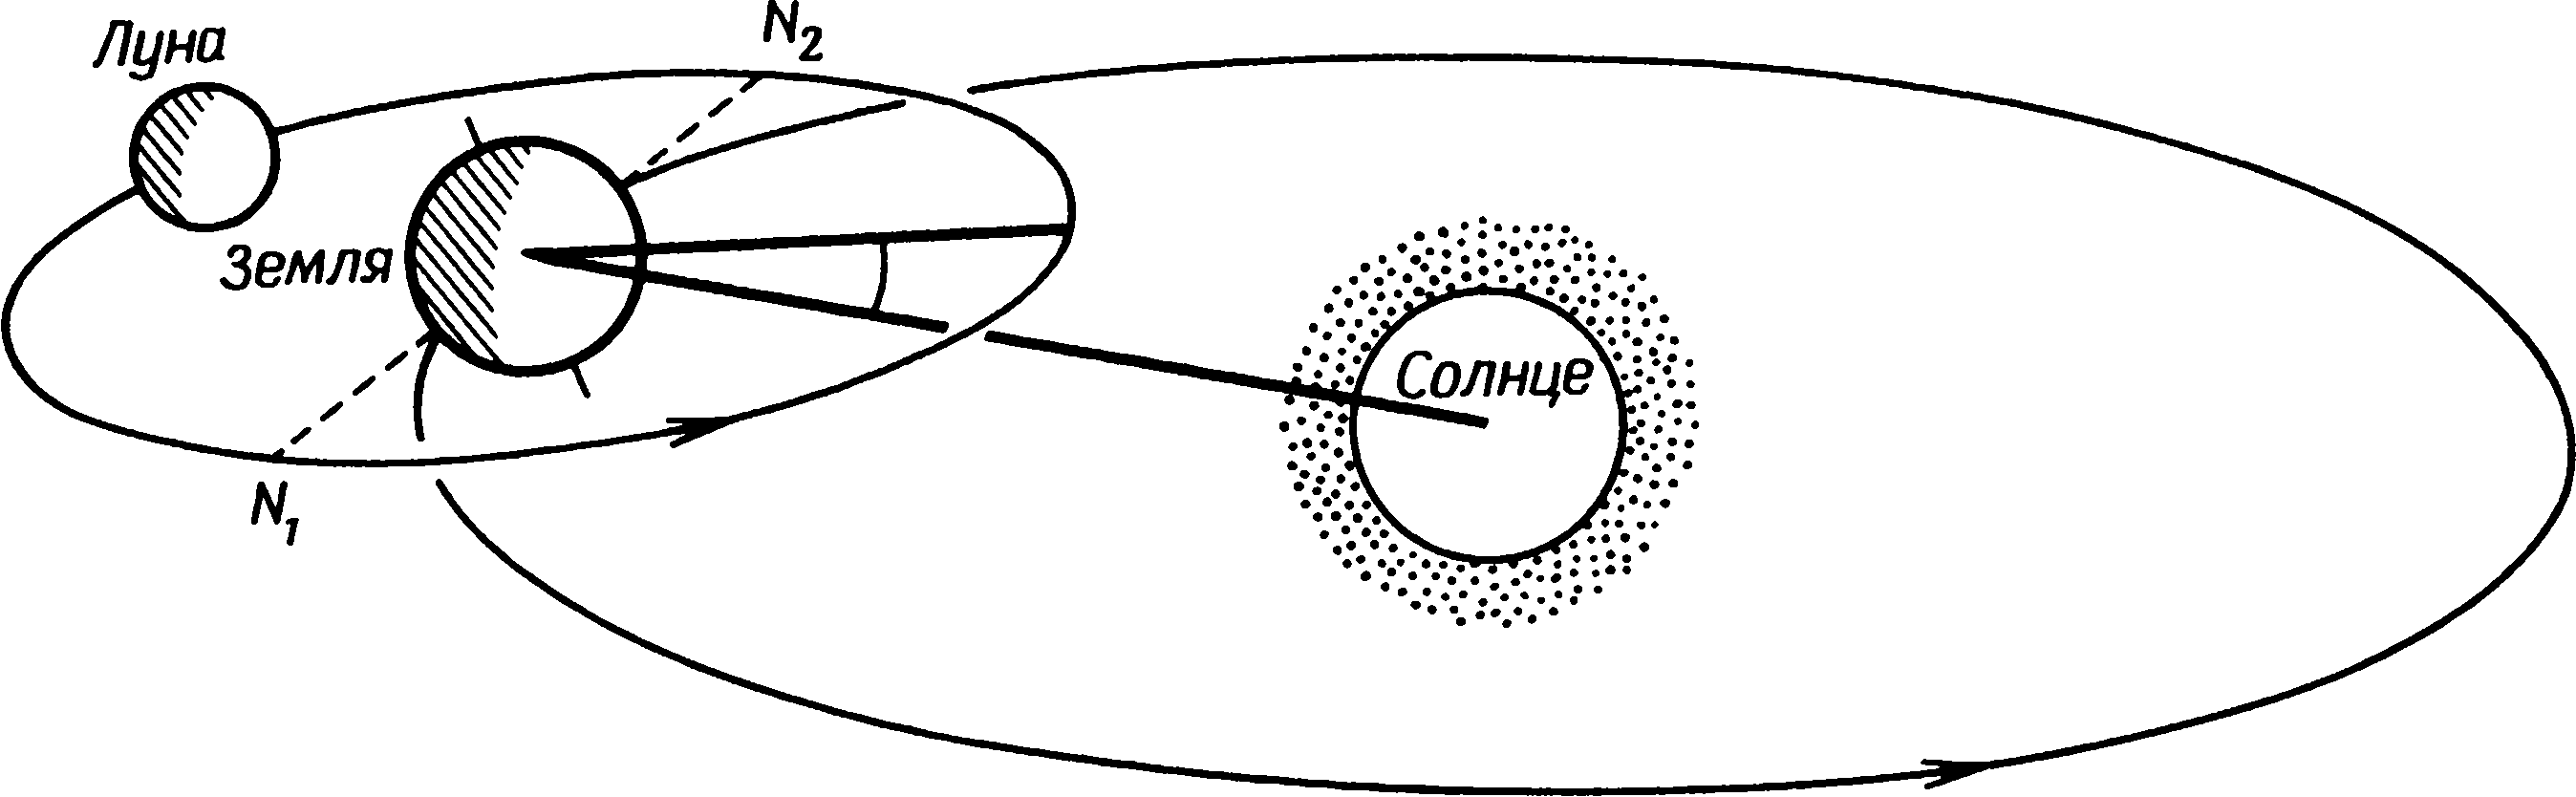 Рис. 4.7. Орбита Луны в пространстве (масштаб не выдержан)